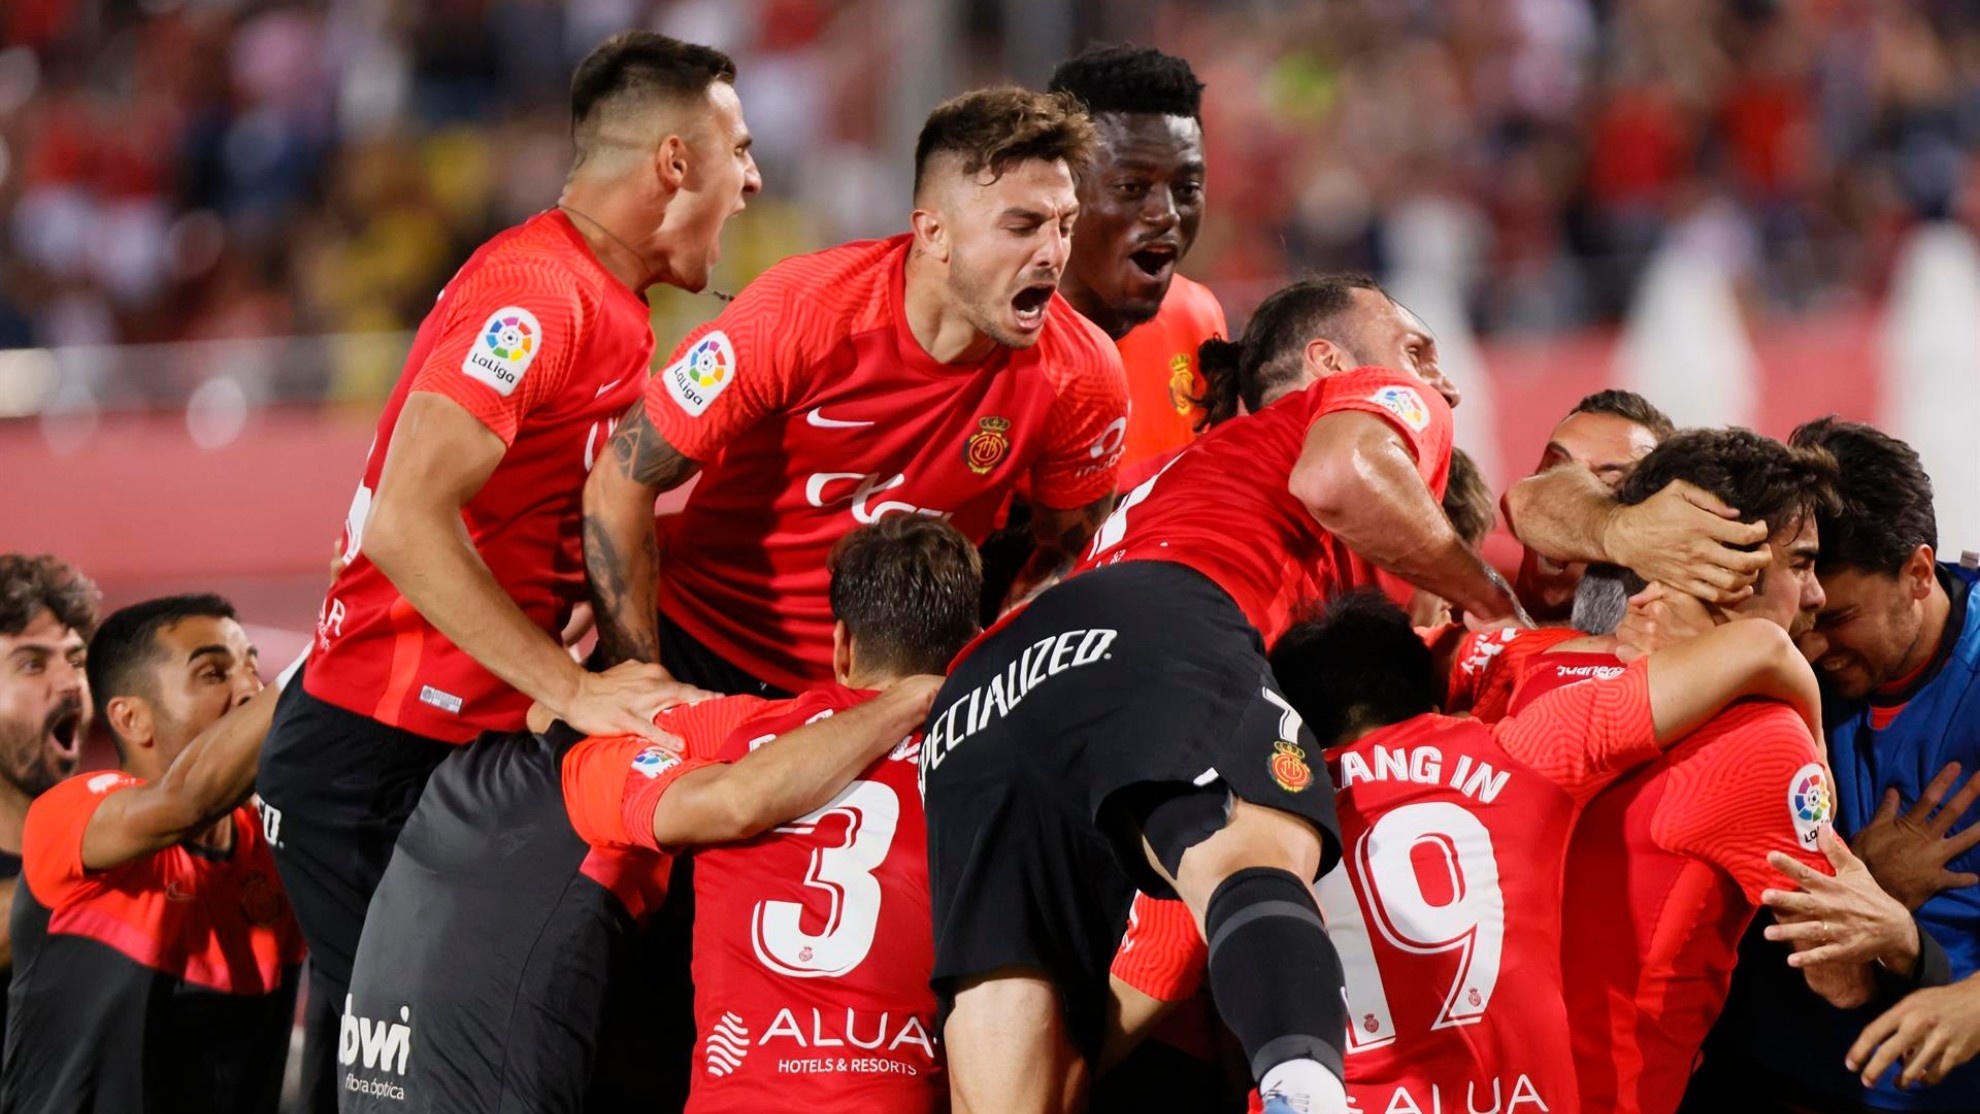 Mallorca 2-1 Rayo Vallecano: El Rayo perece ante un necesitado